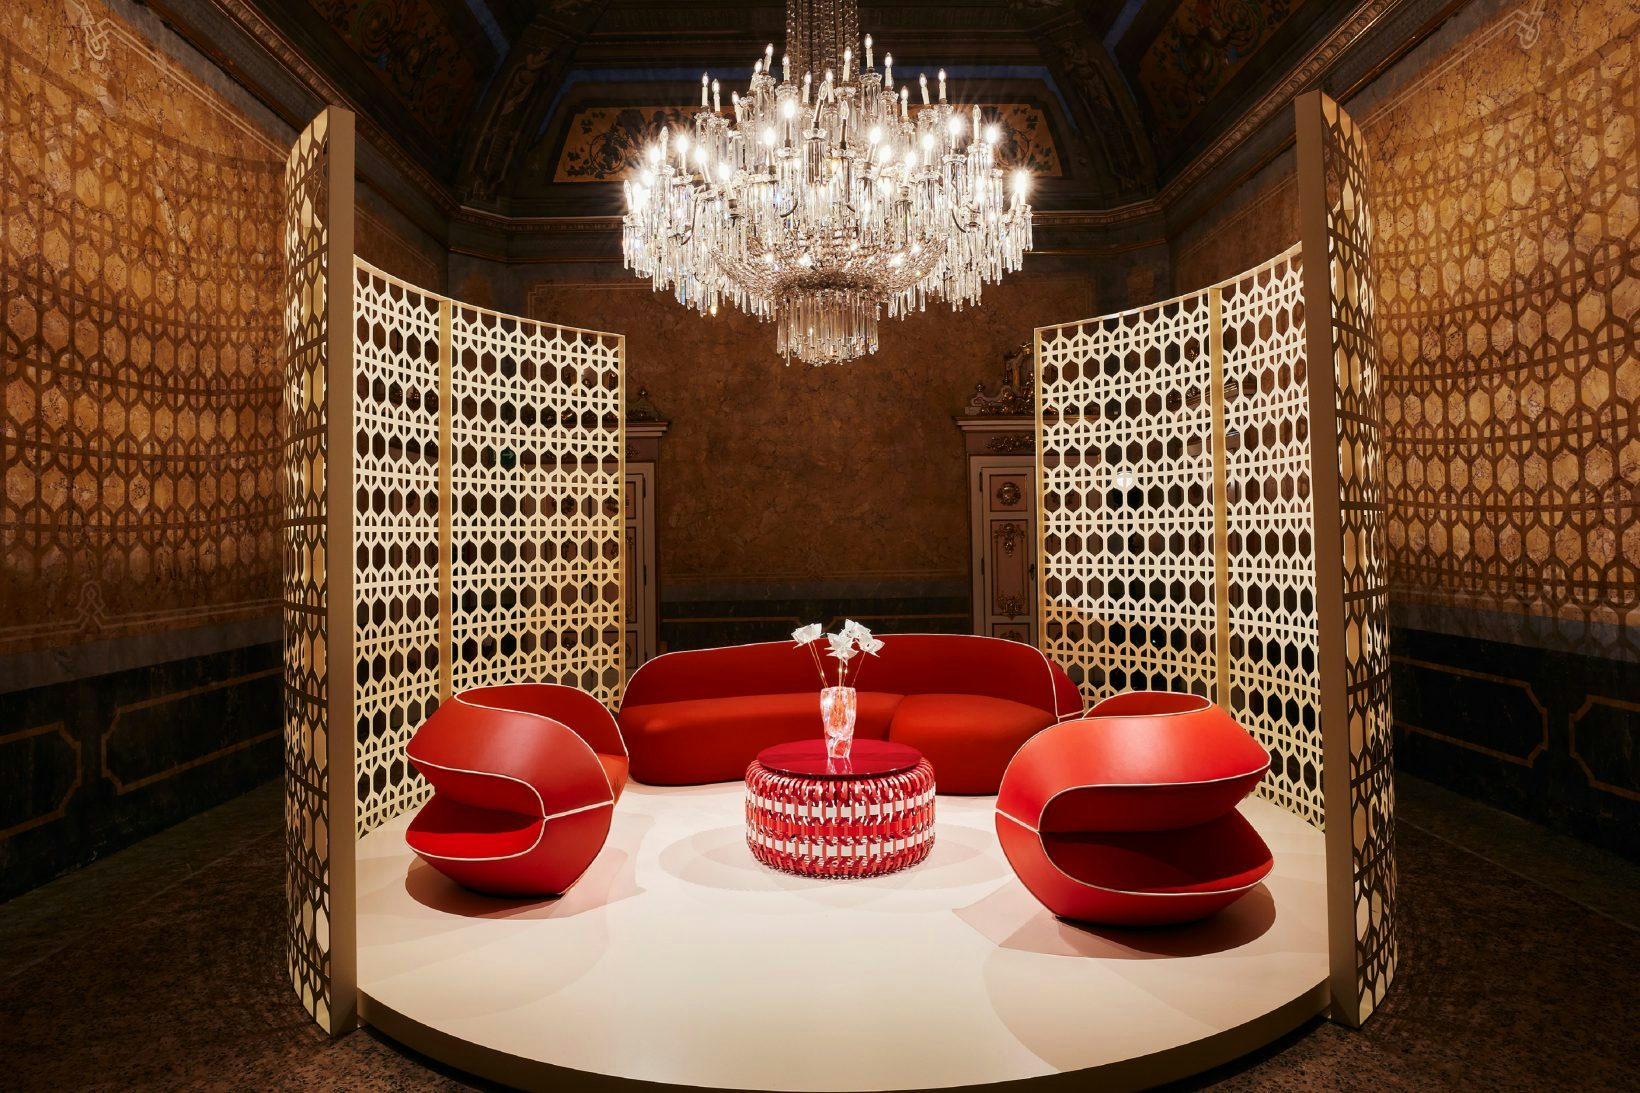 Milan Design Week: a playground for luxury brands